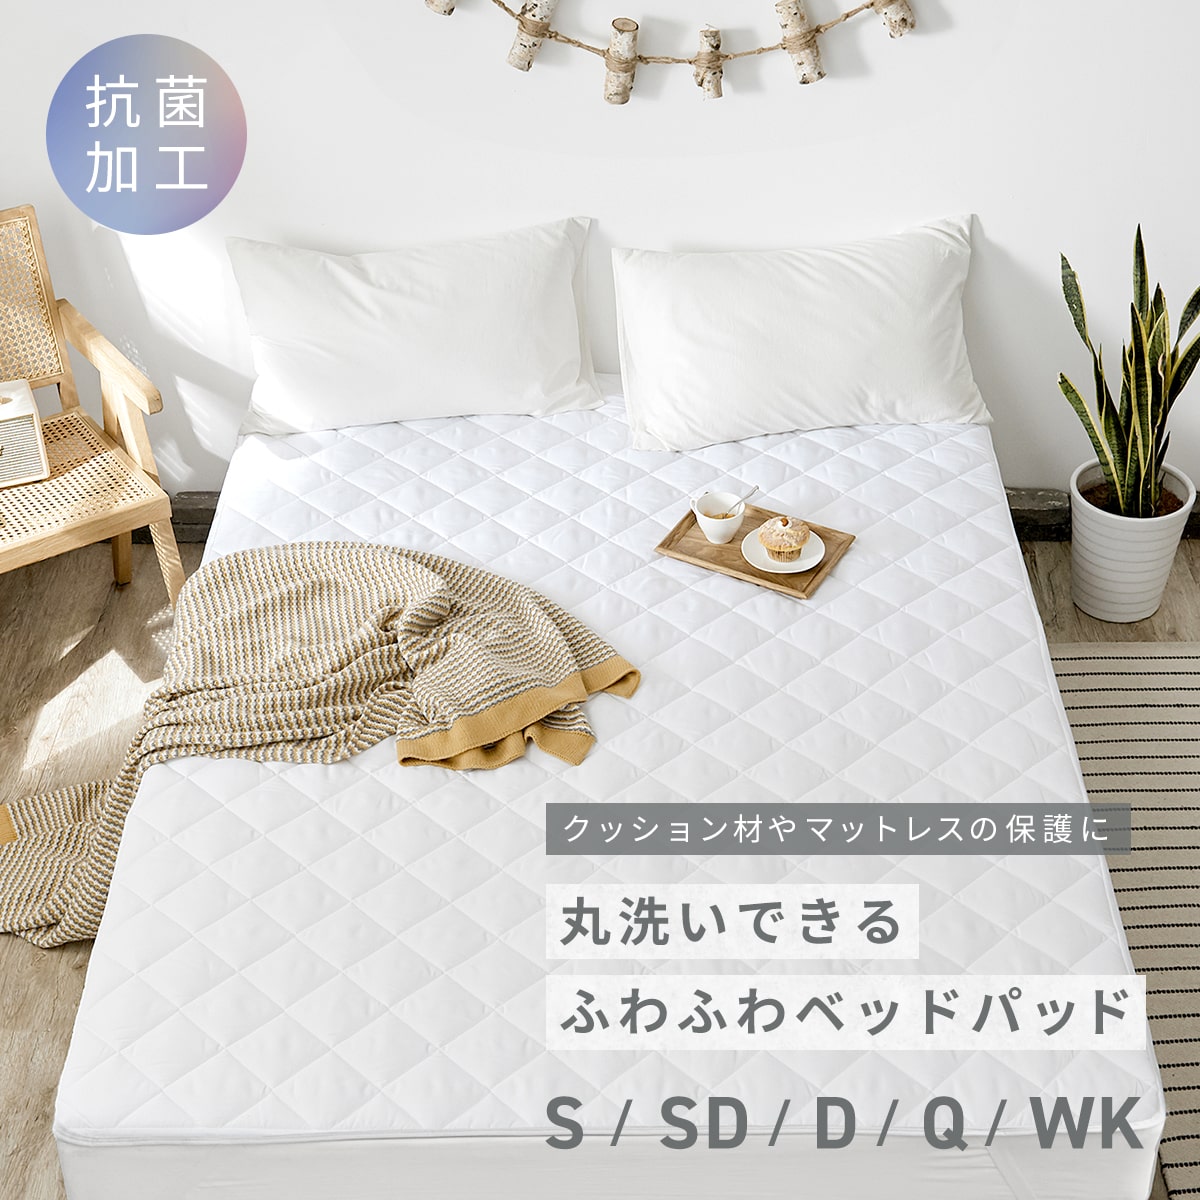 【抗菌加工】 ベッドパッド シング